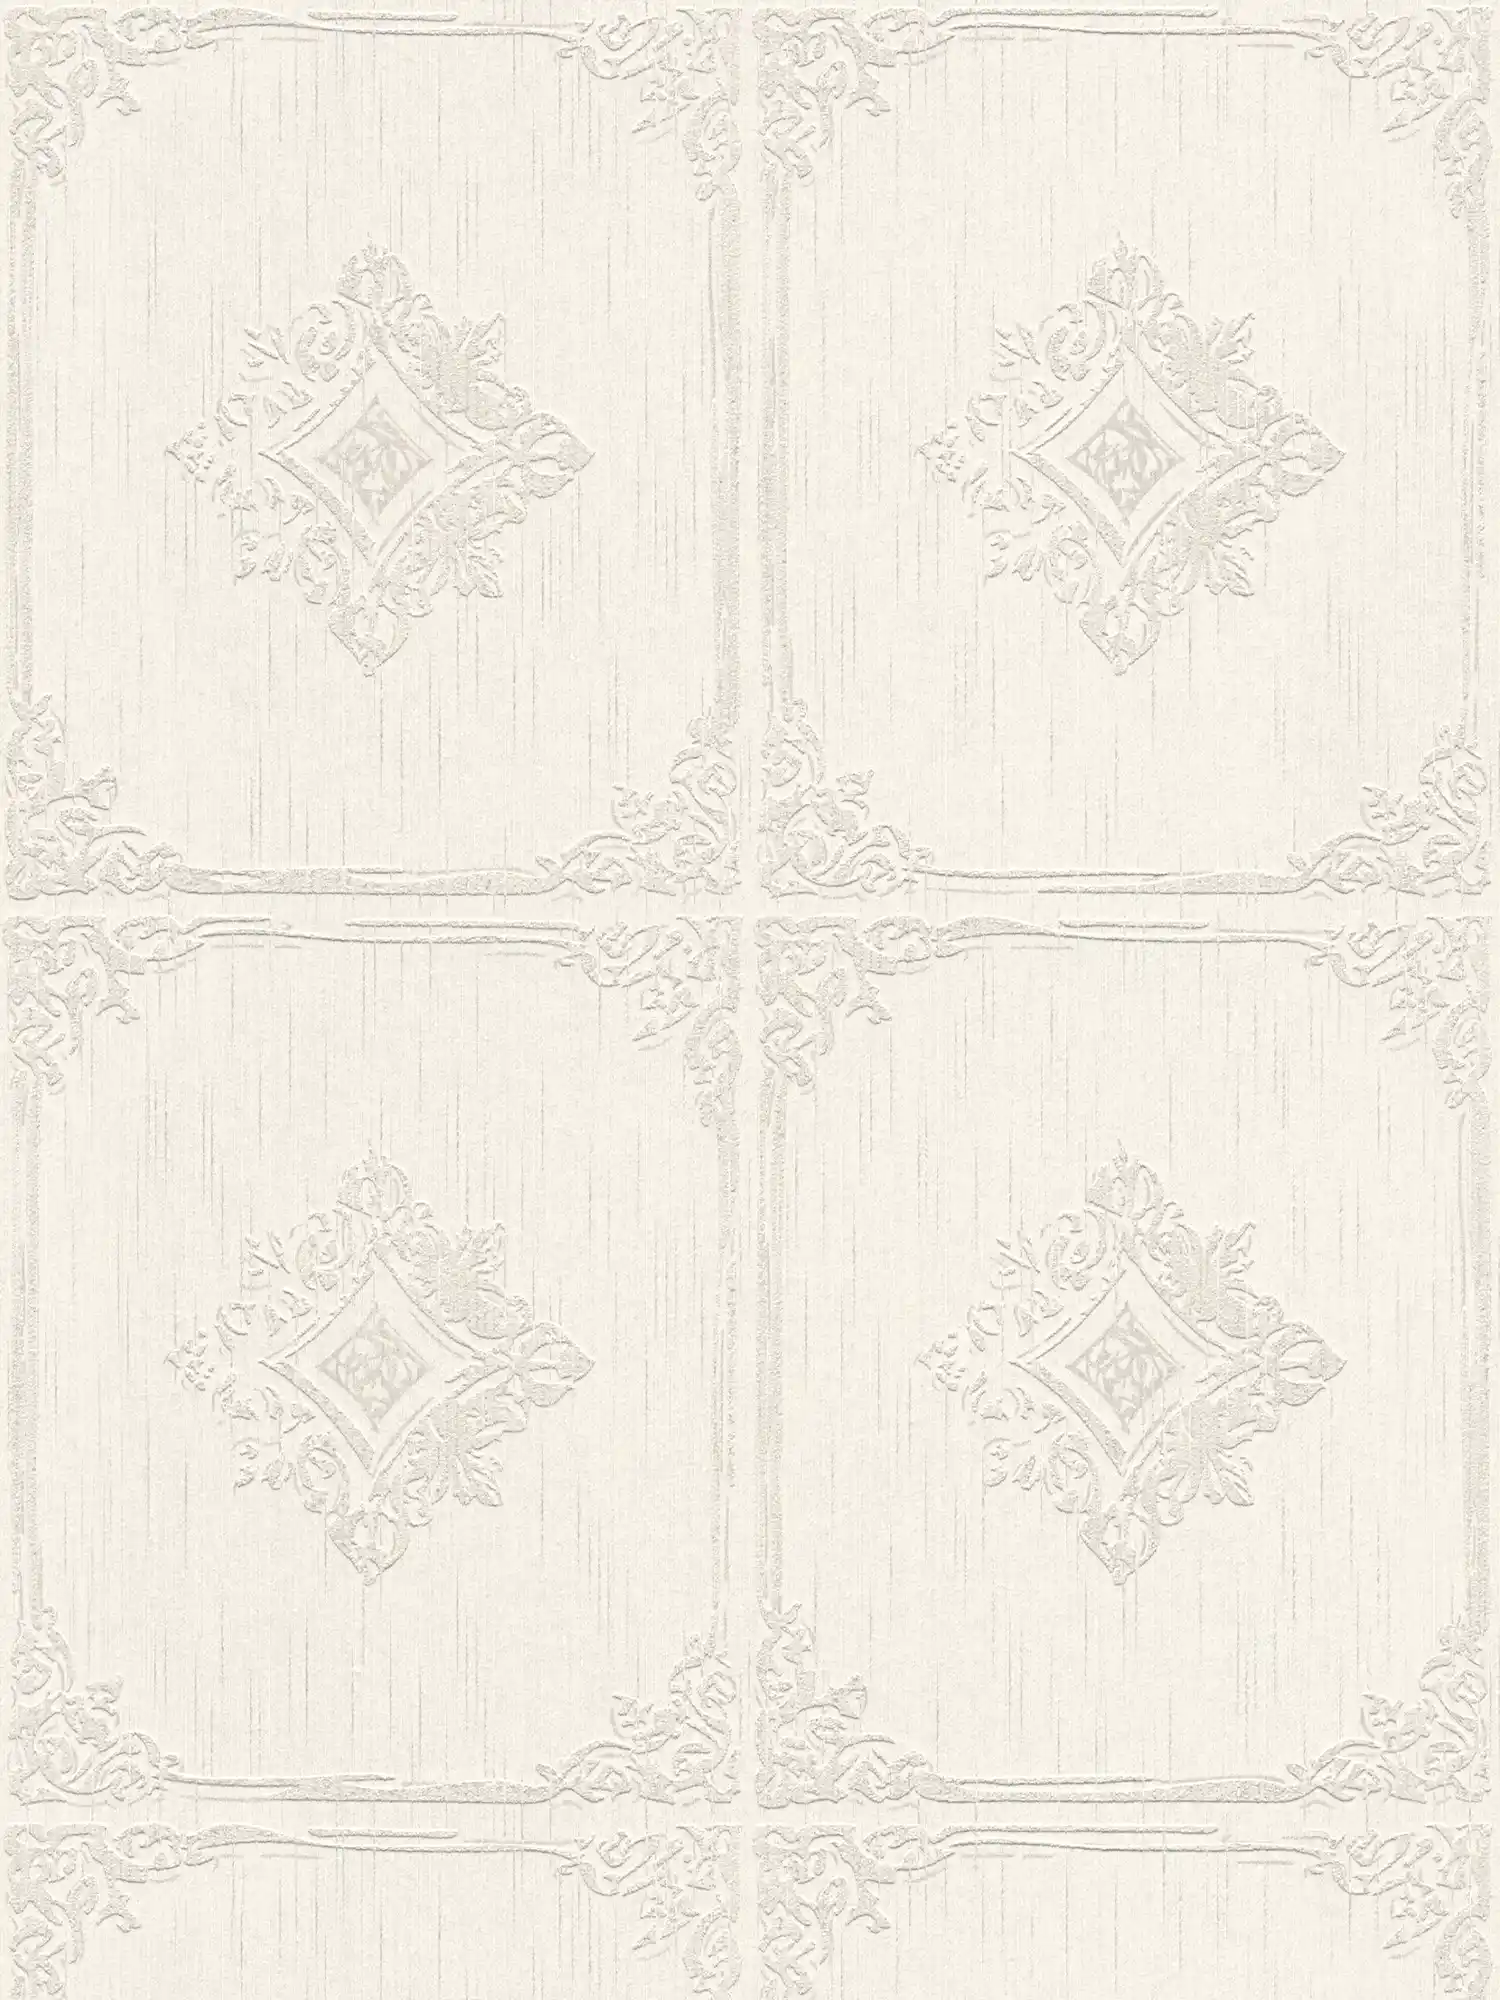 Carta da parati vintage a stucco con cassettoni ornamentali - crema, grigio
